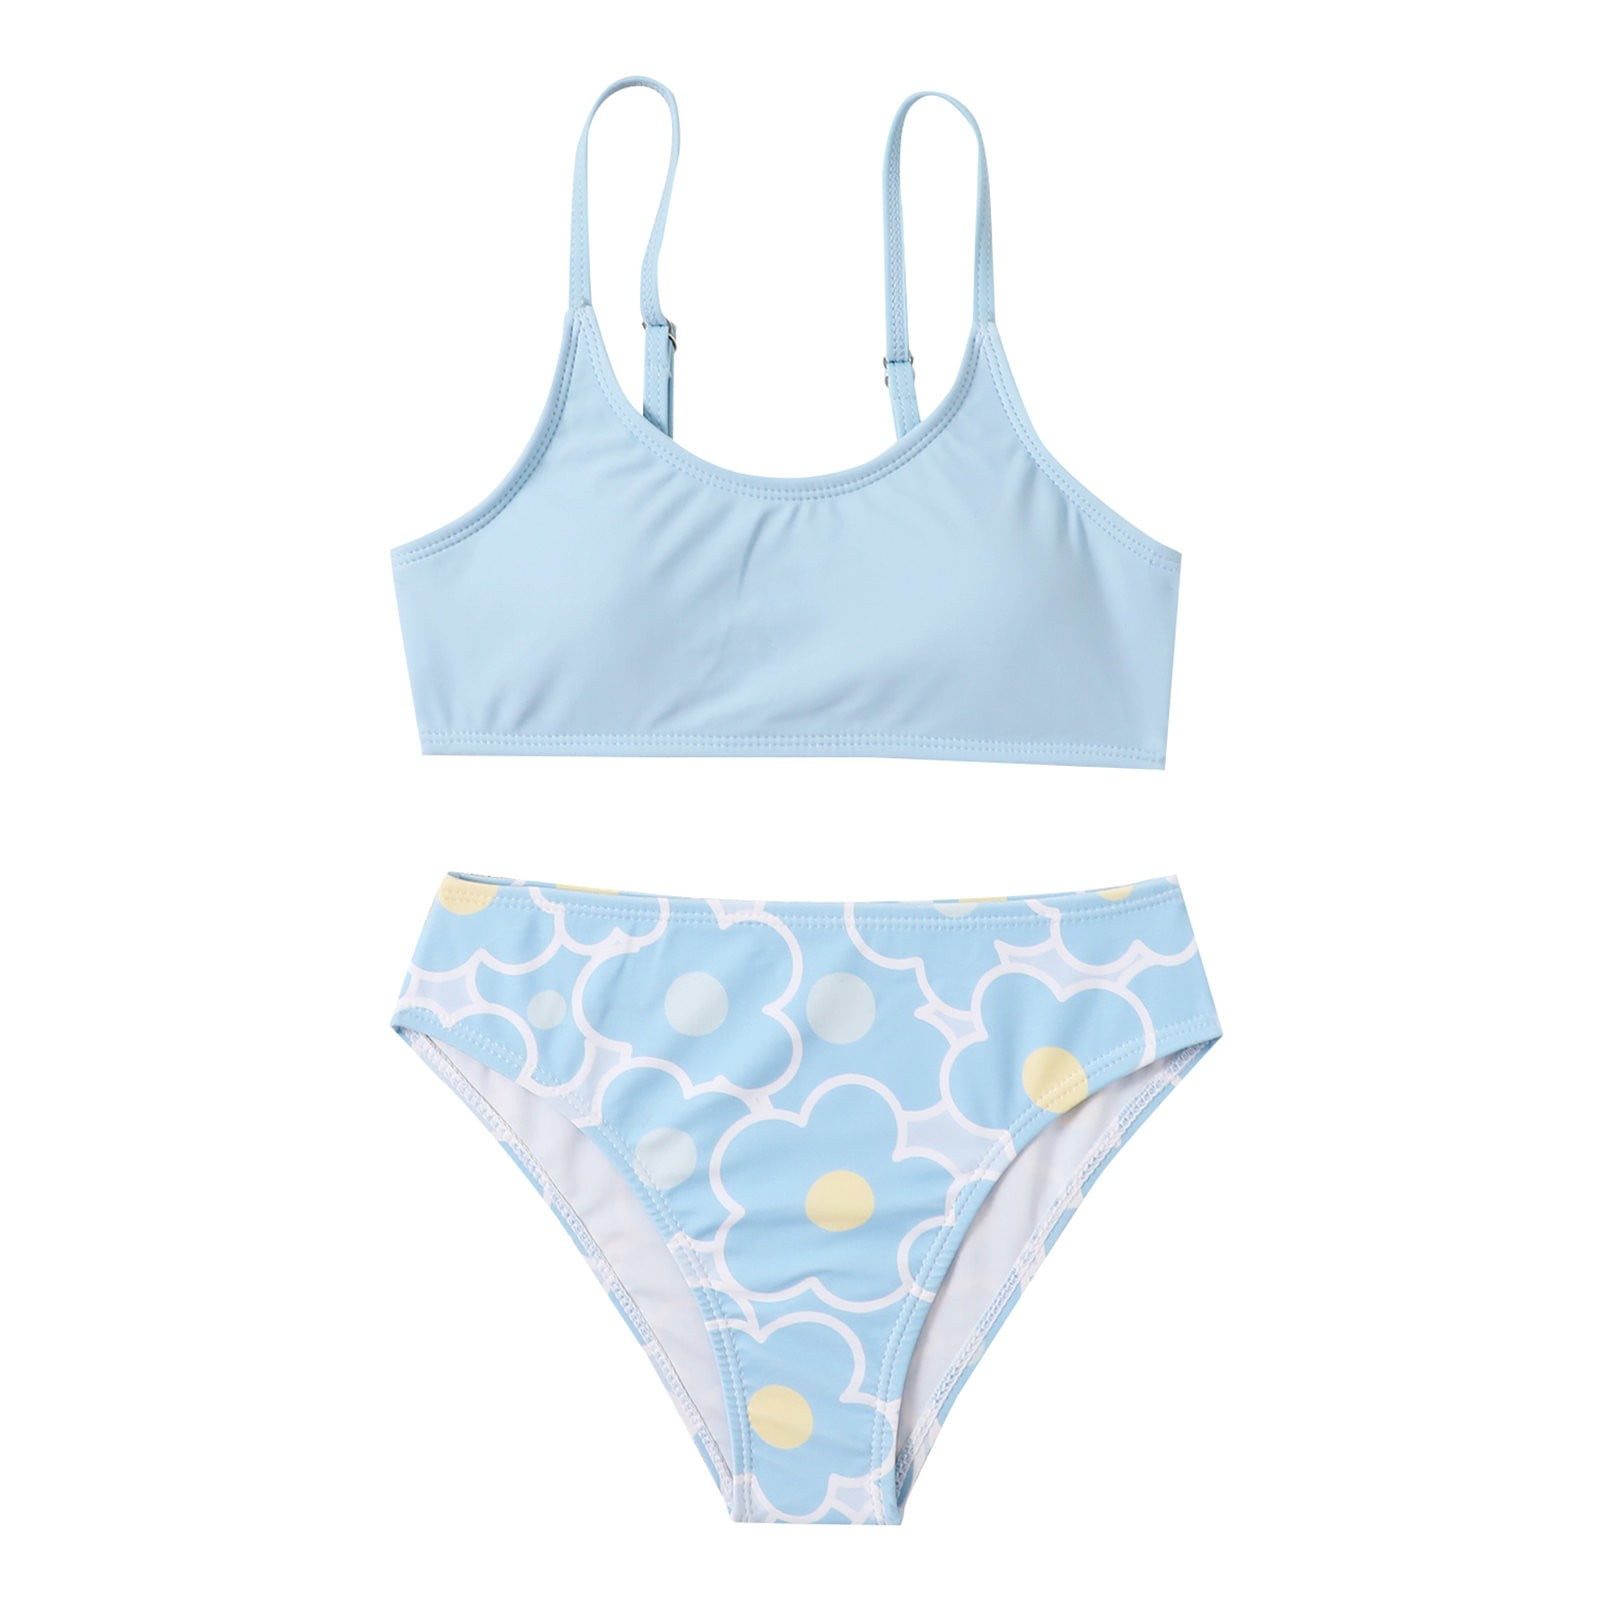 Kids Girls Swim Bottoms Briefs Children Summer Bikini Underwear